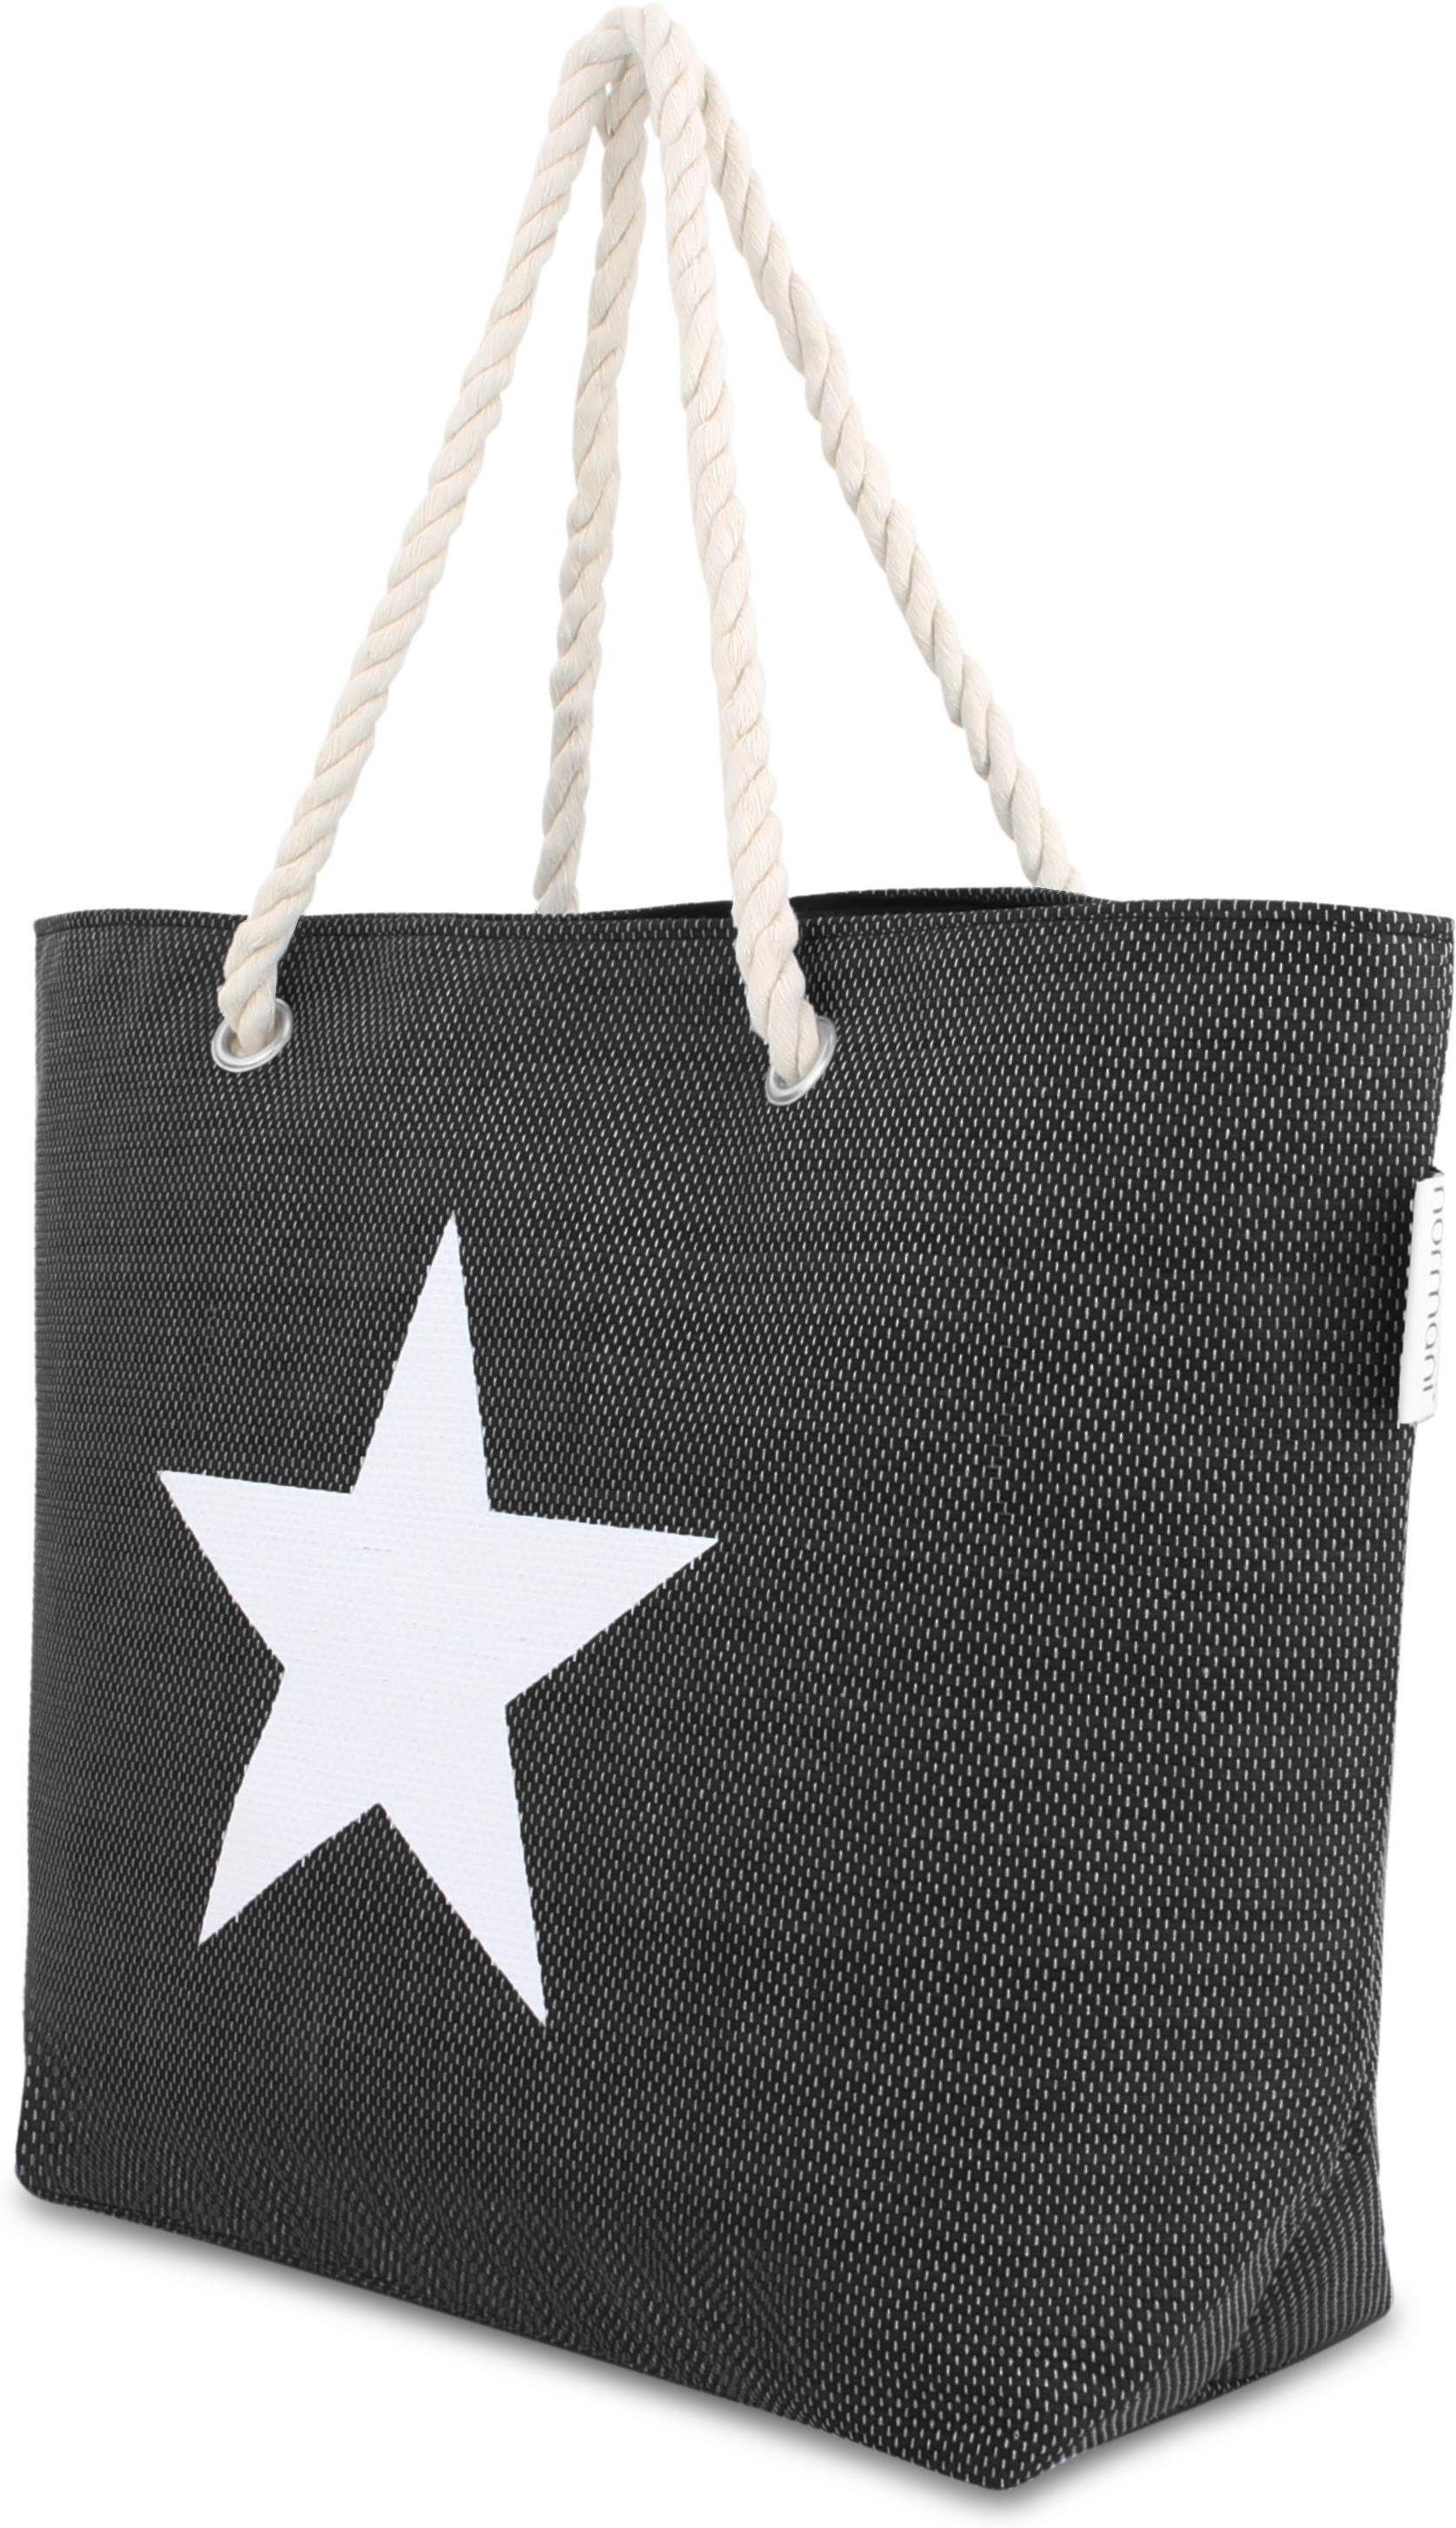 als Sommer-Umhängetasche, Strandtasche, Schultertasche tragbar Henkeltasche Strandtasche Black normani Bequeme Star